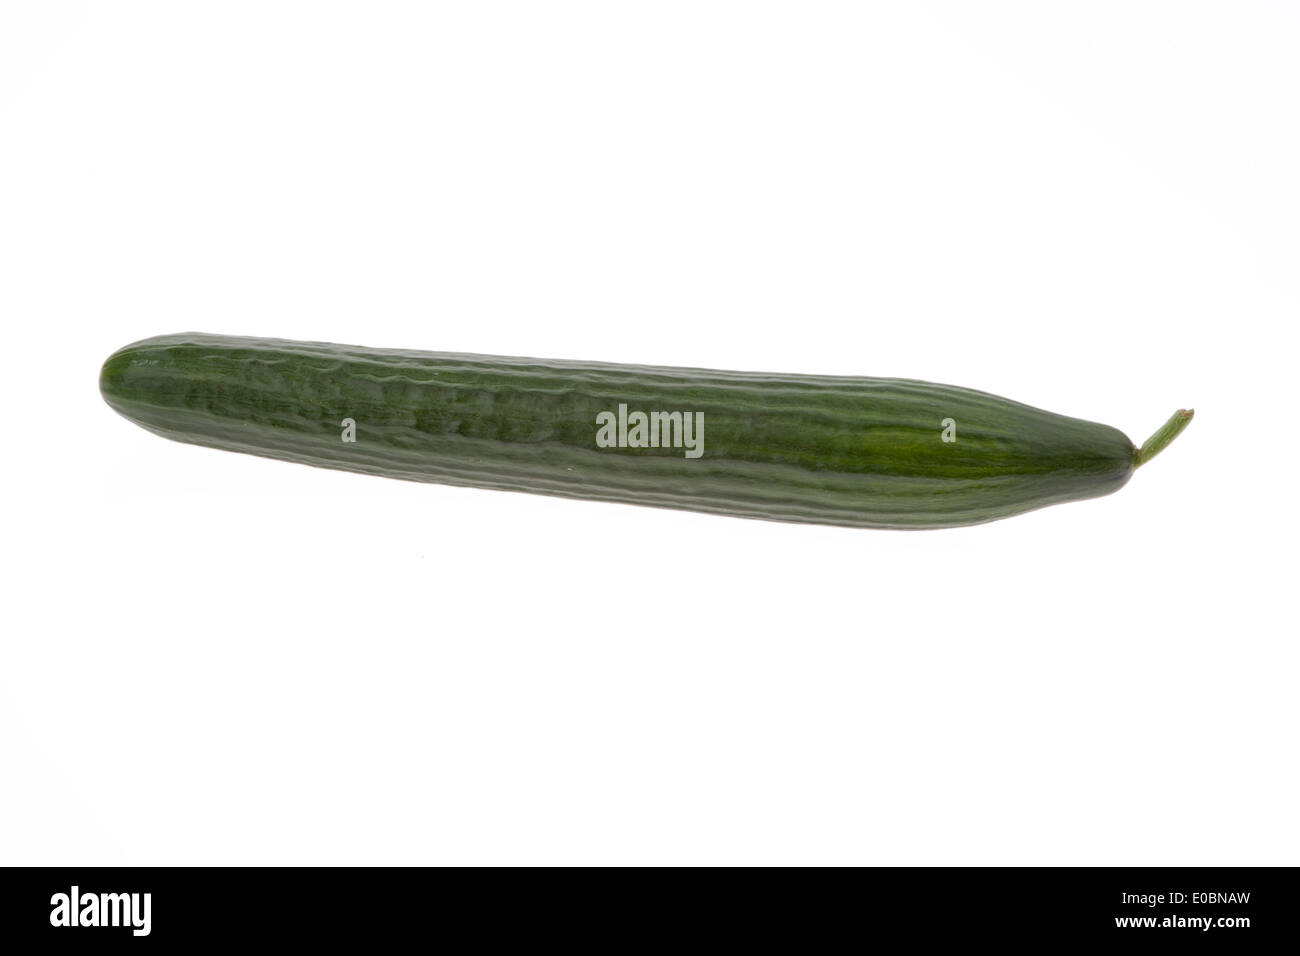 A cucumber lies on a white background, Eine Gurke liegt auf einem weissen Hintergrund Stock Photo